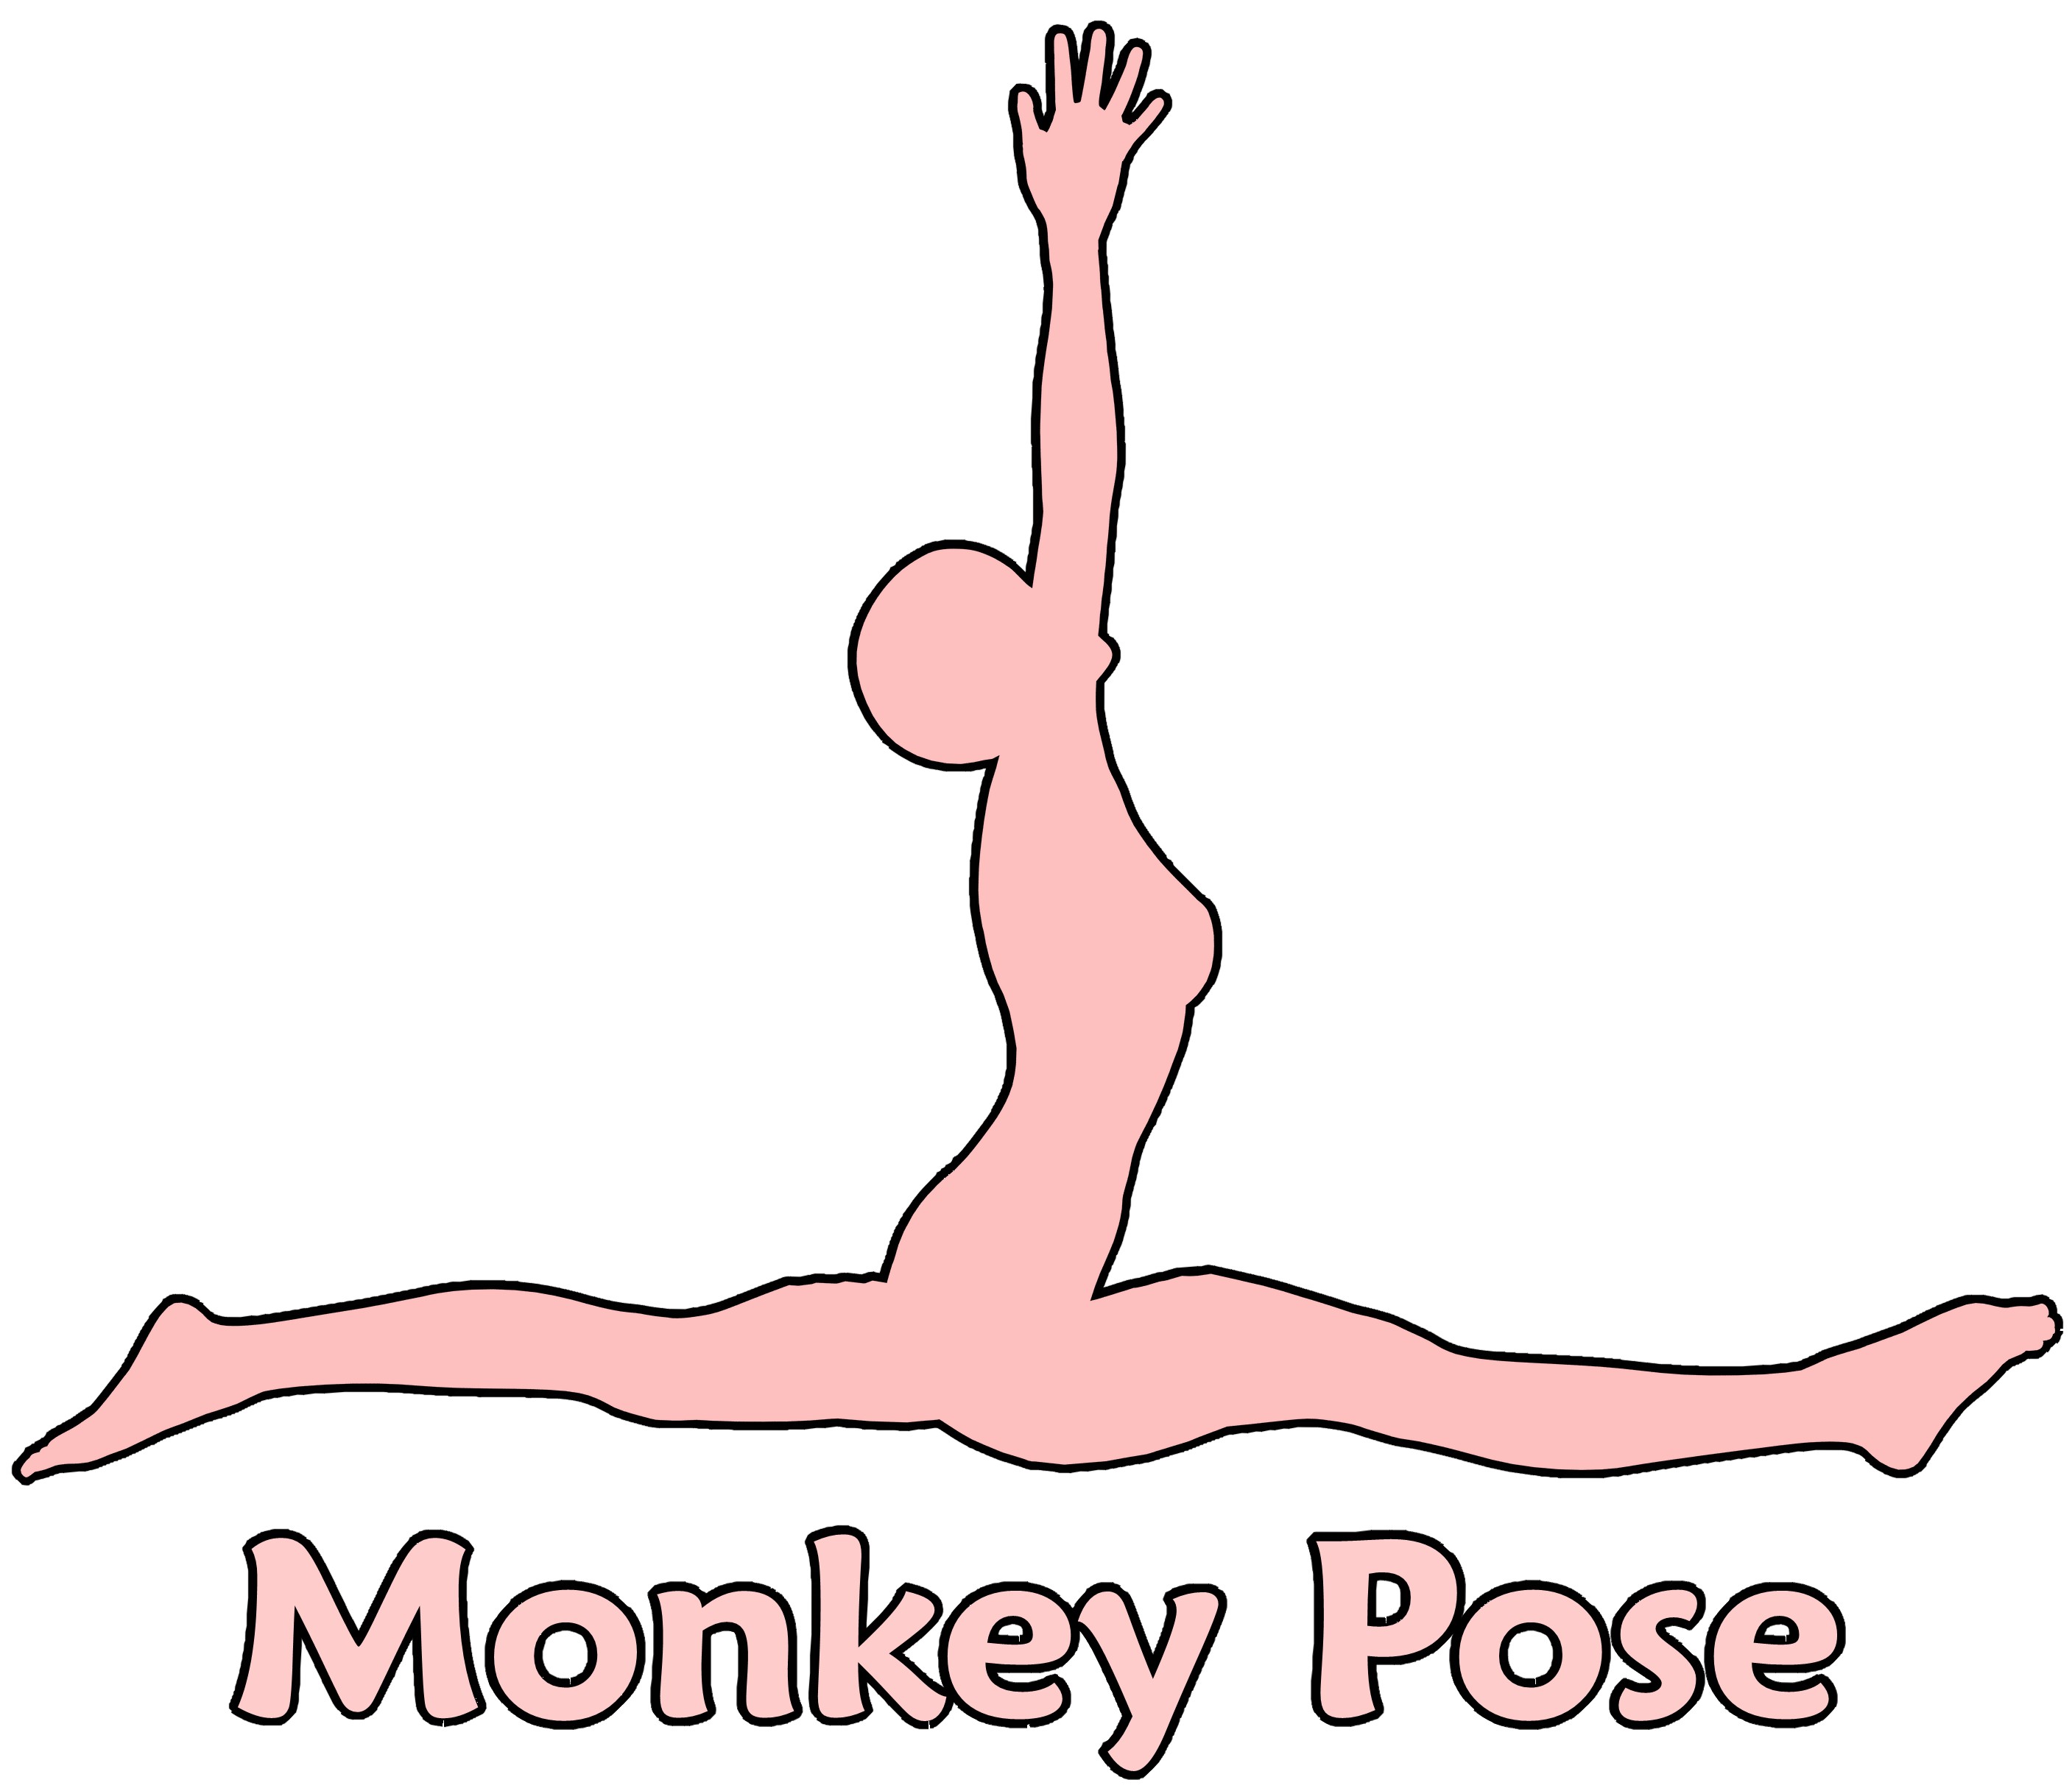 Monkey pose photo